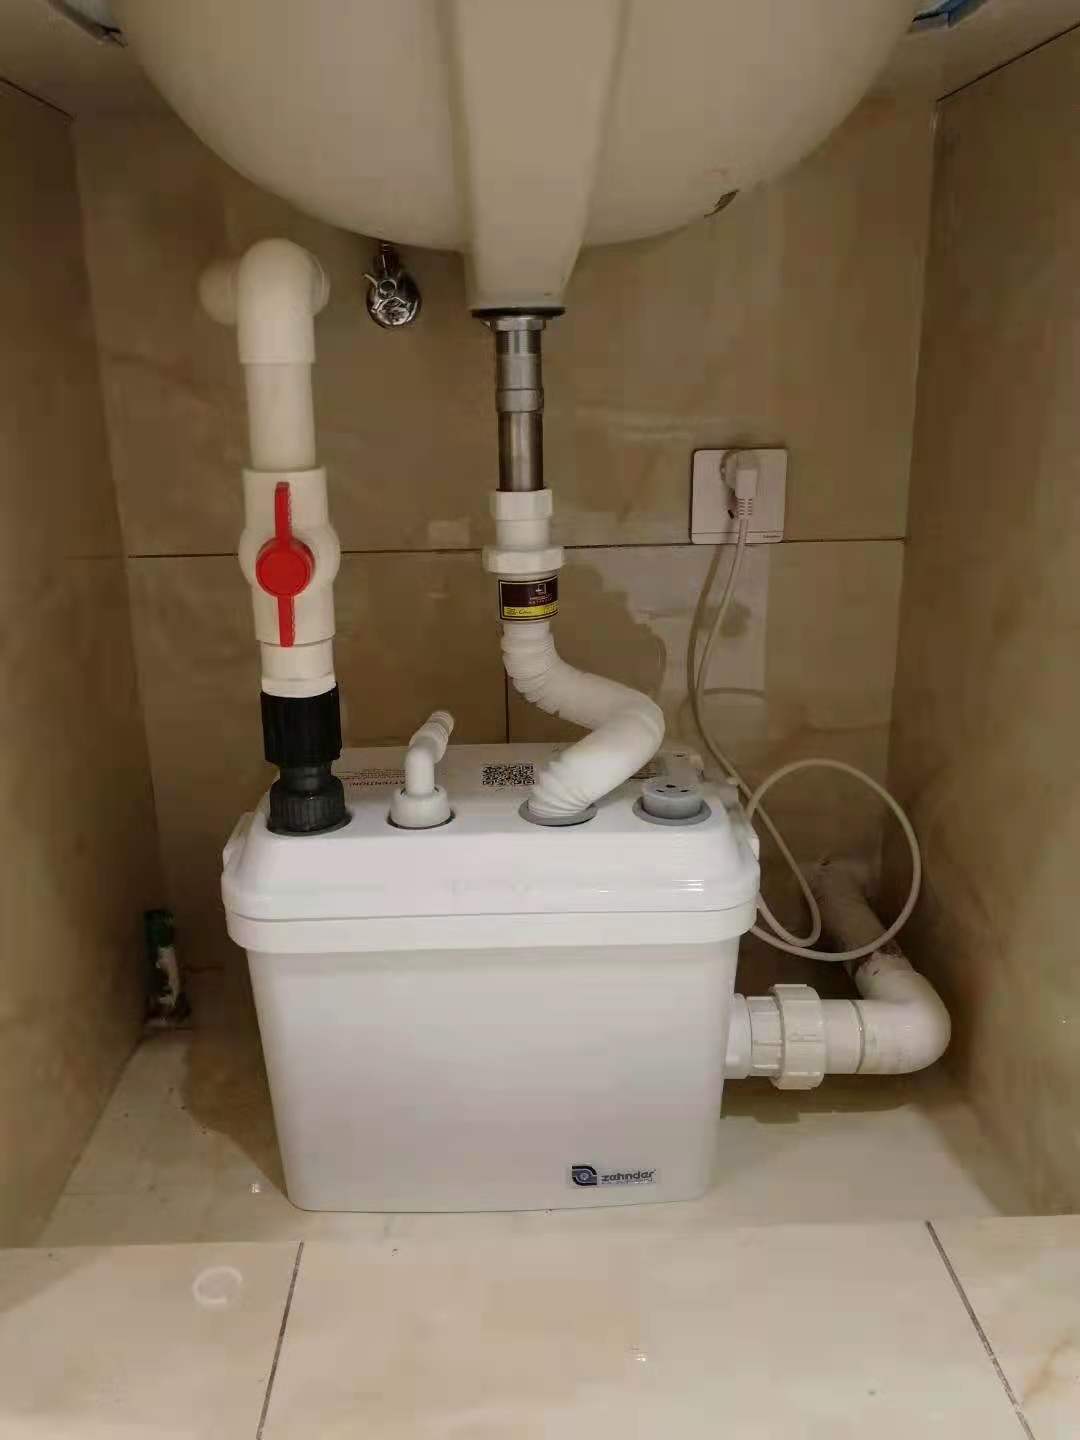 厨房污水提升器